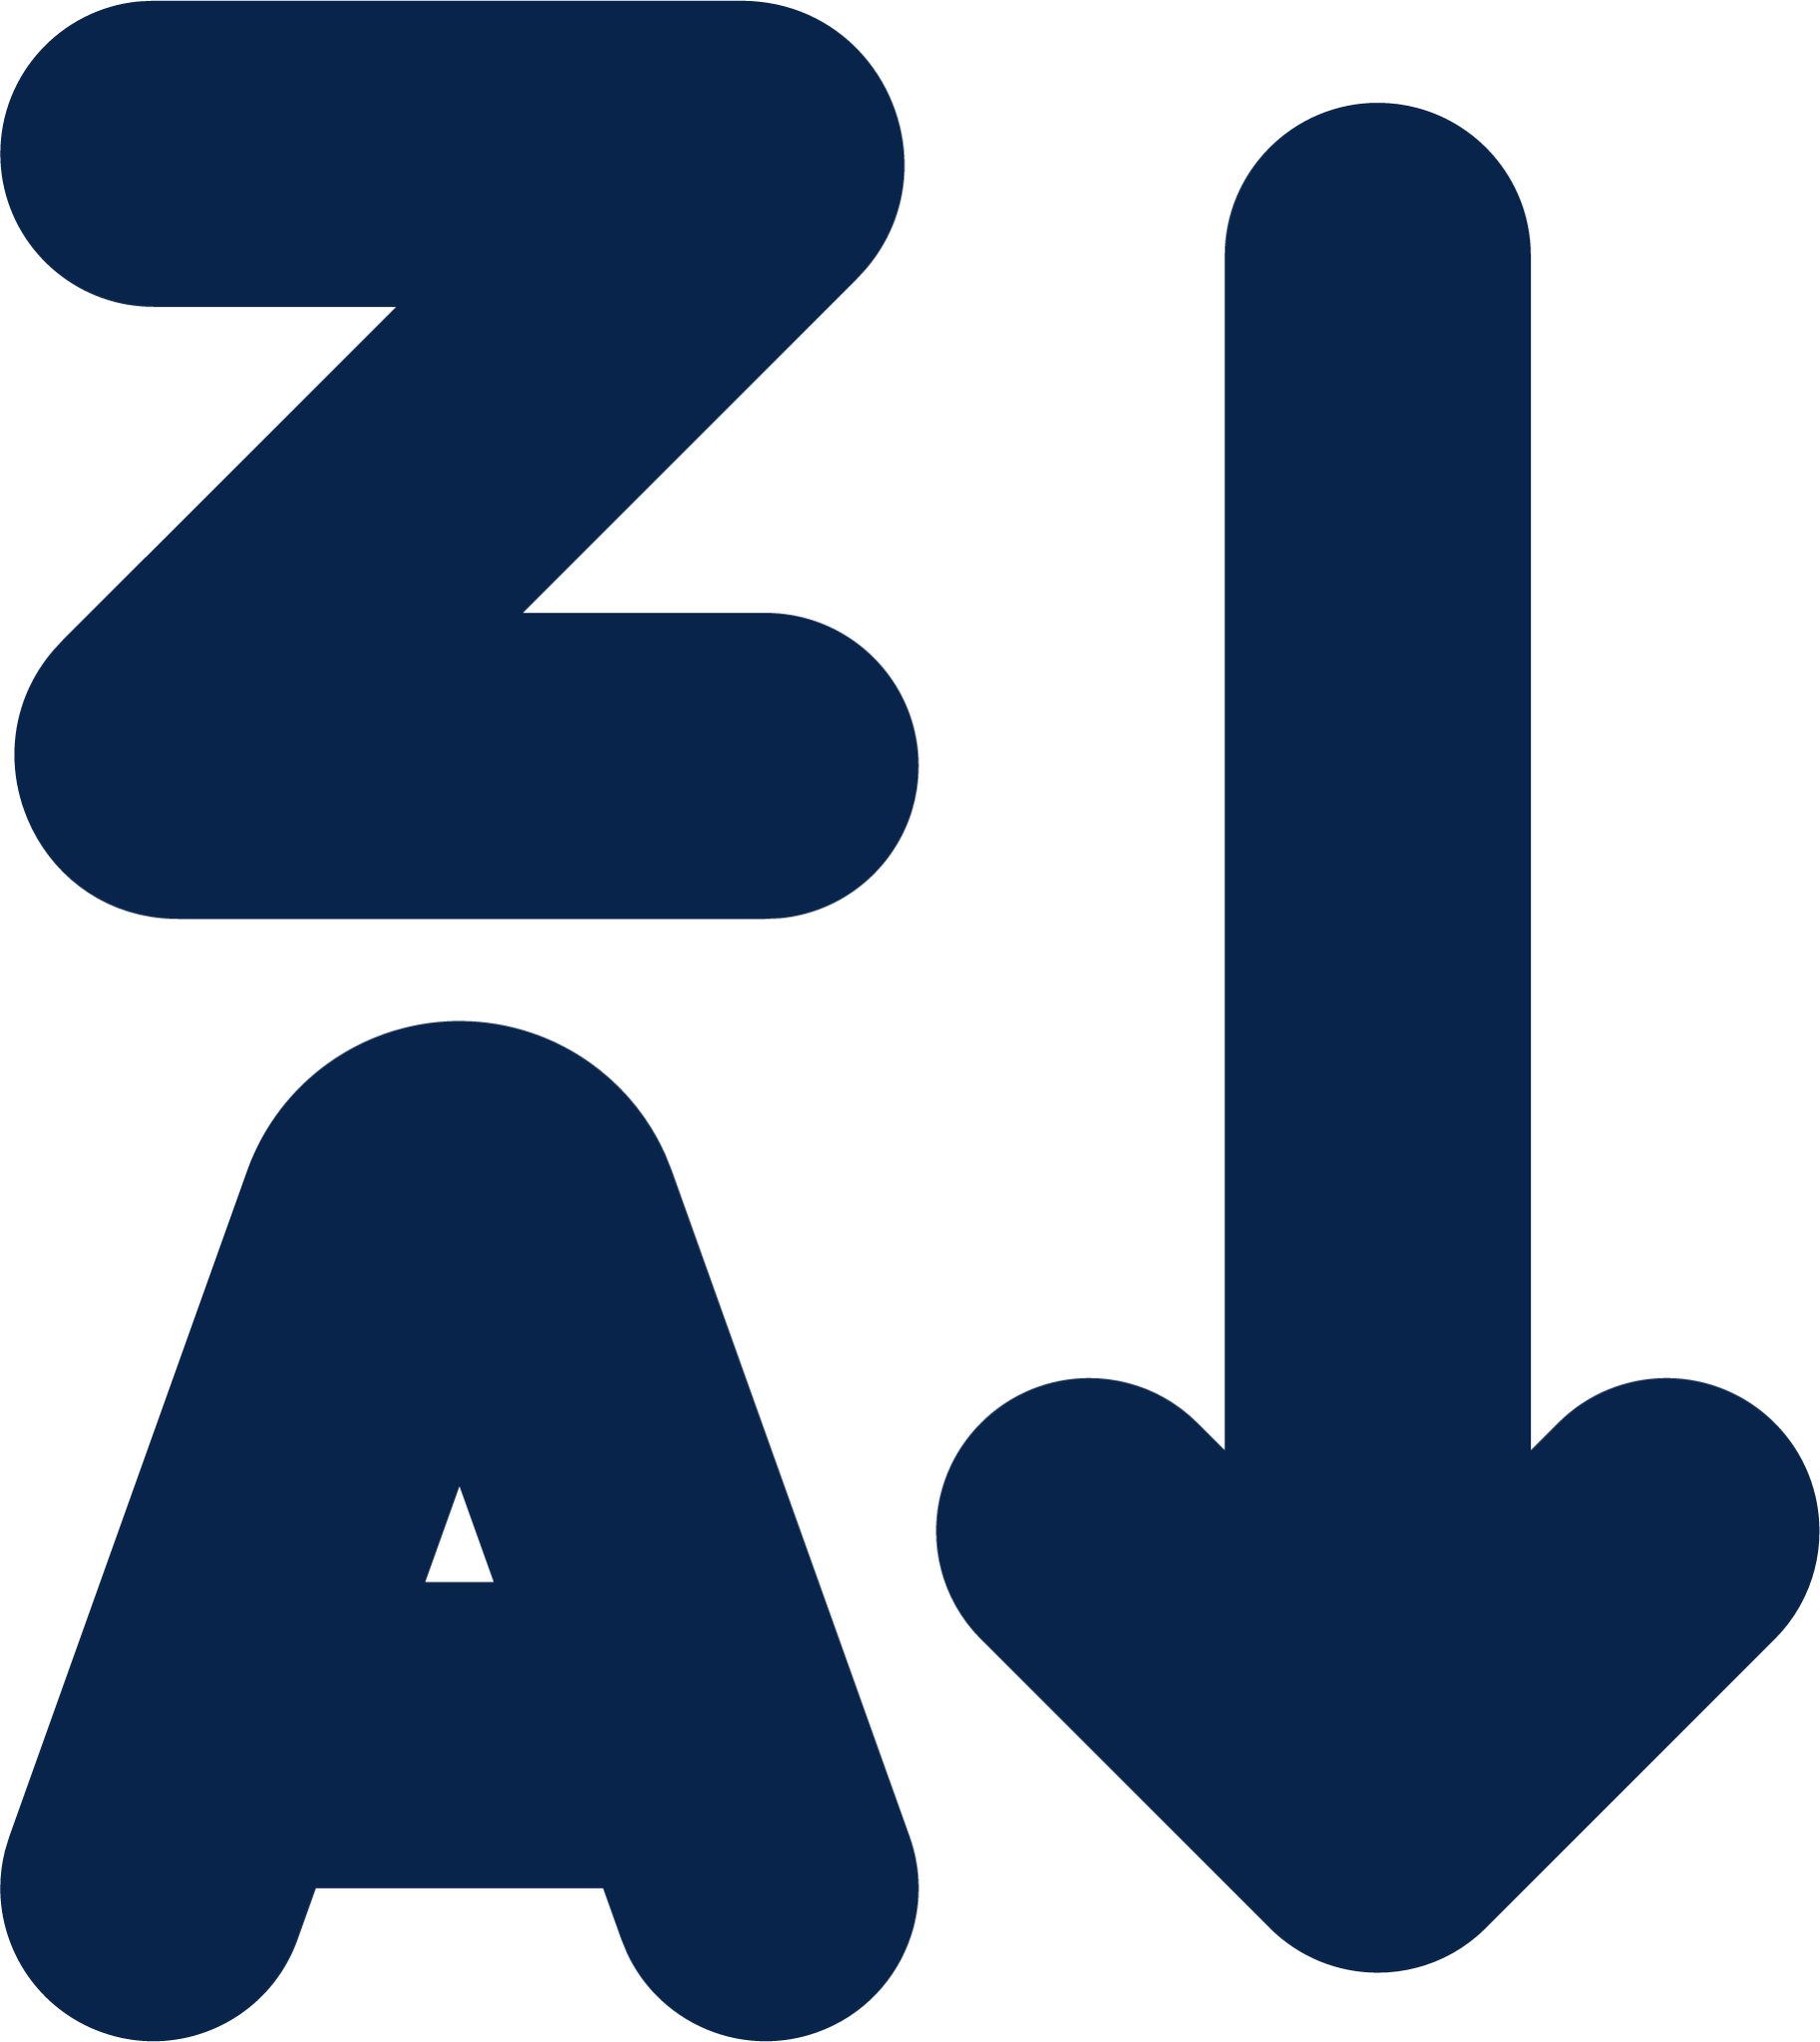 ZA sort descending letters fill editor icon